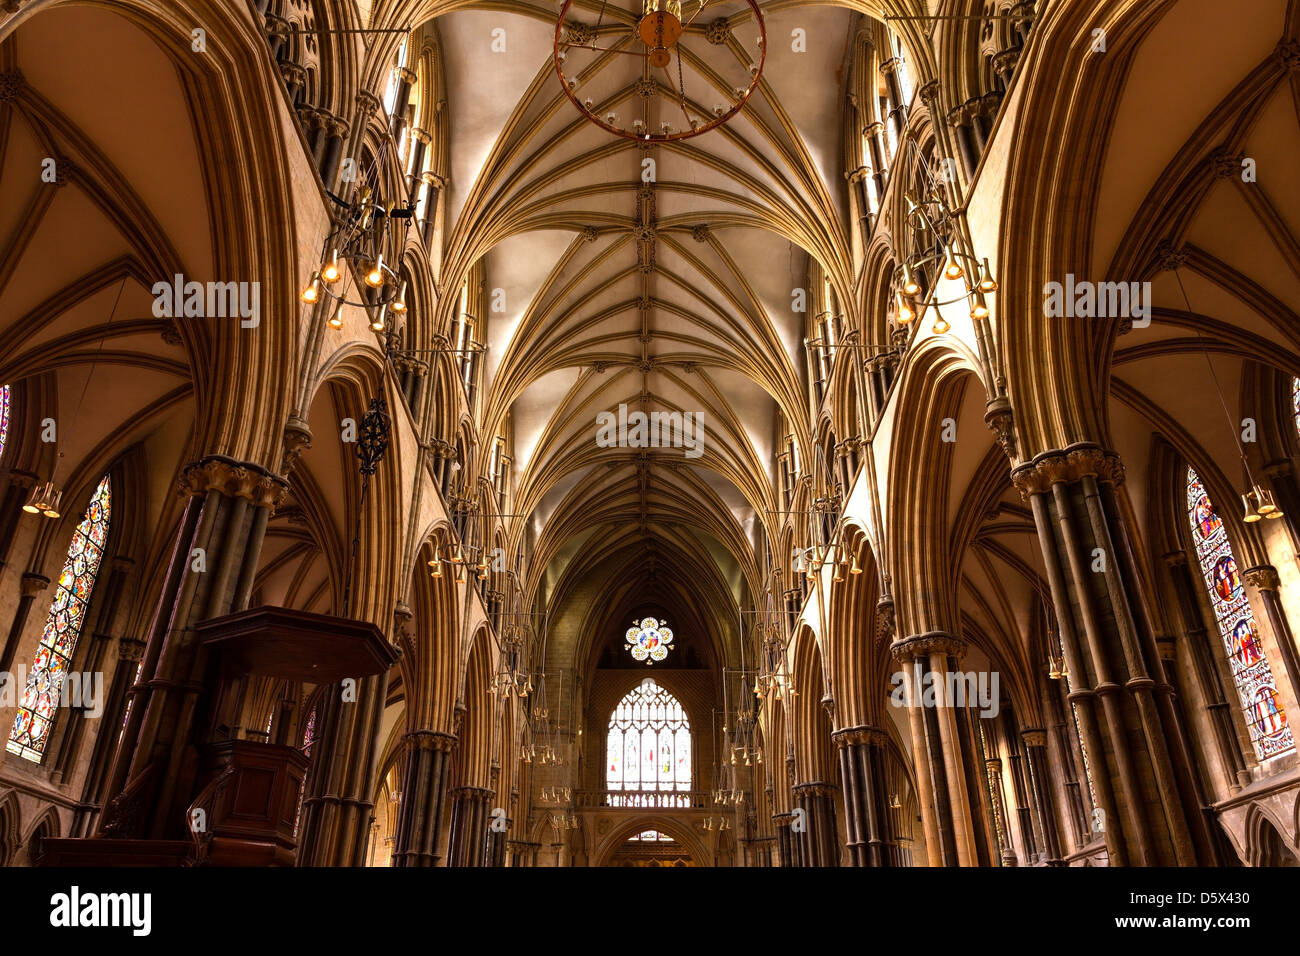 Señaló la masonería arcos góticos, pilares de piedra y techos abovedados por encima de la nave central de la Catedral de Lincoln, Lincolnshire, Inglaterra, Reino Unido. Foto de stock